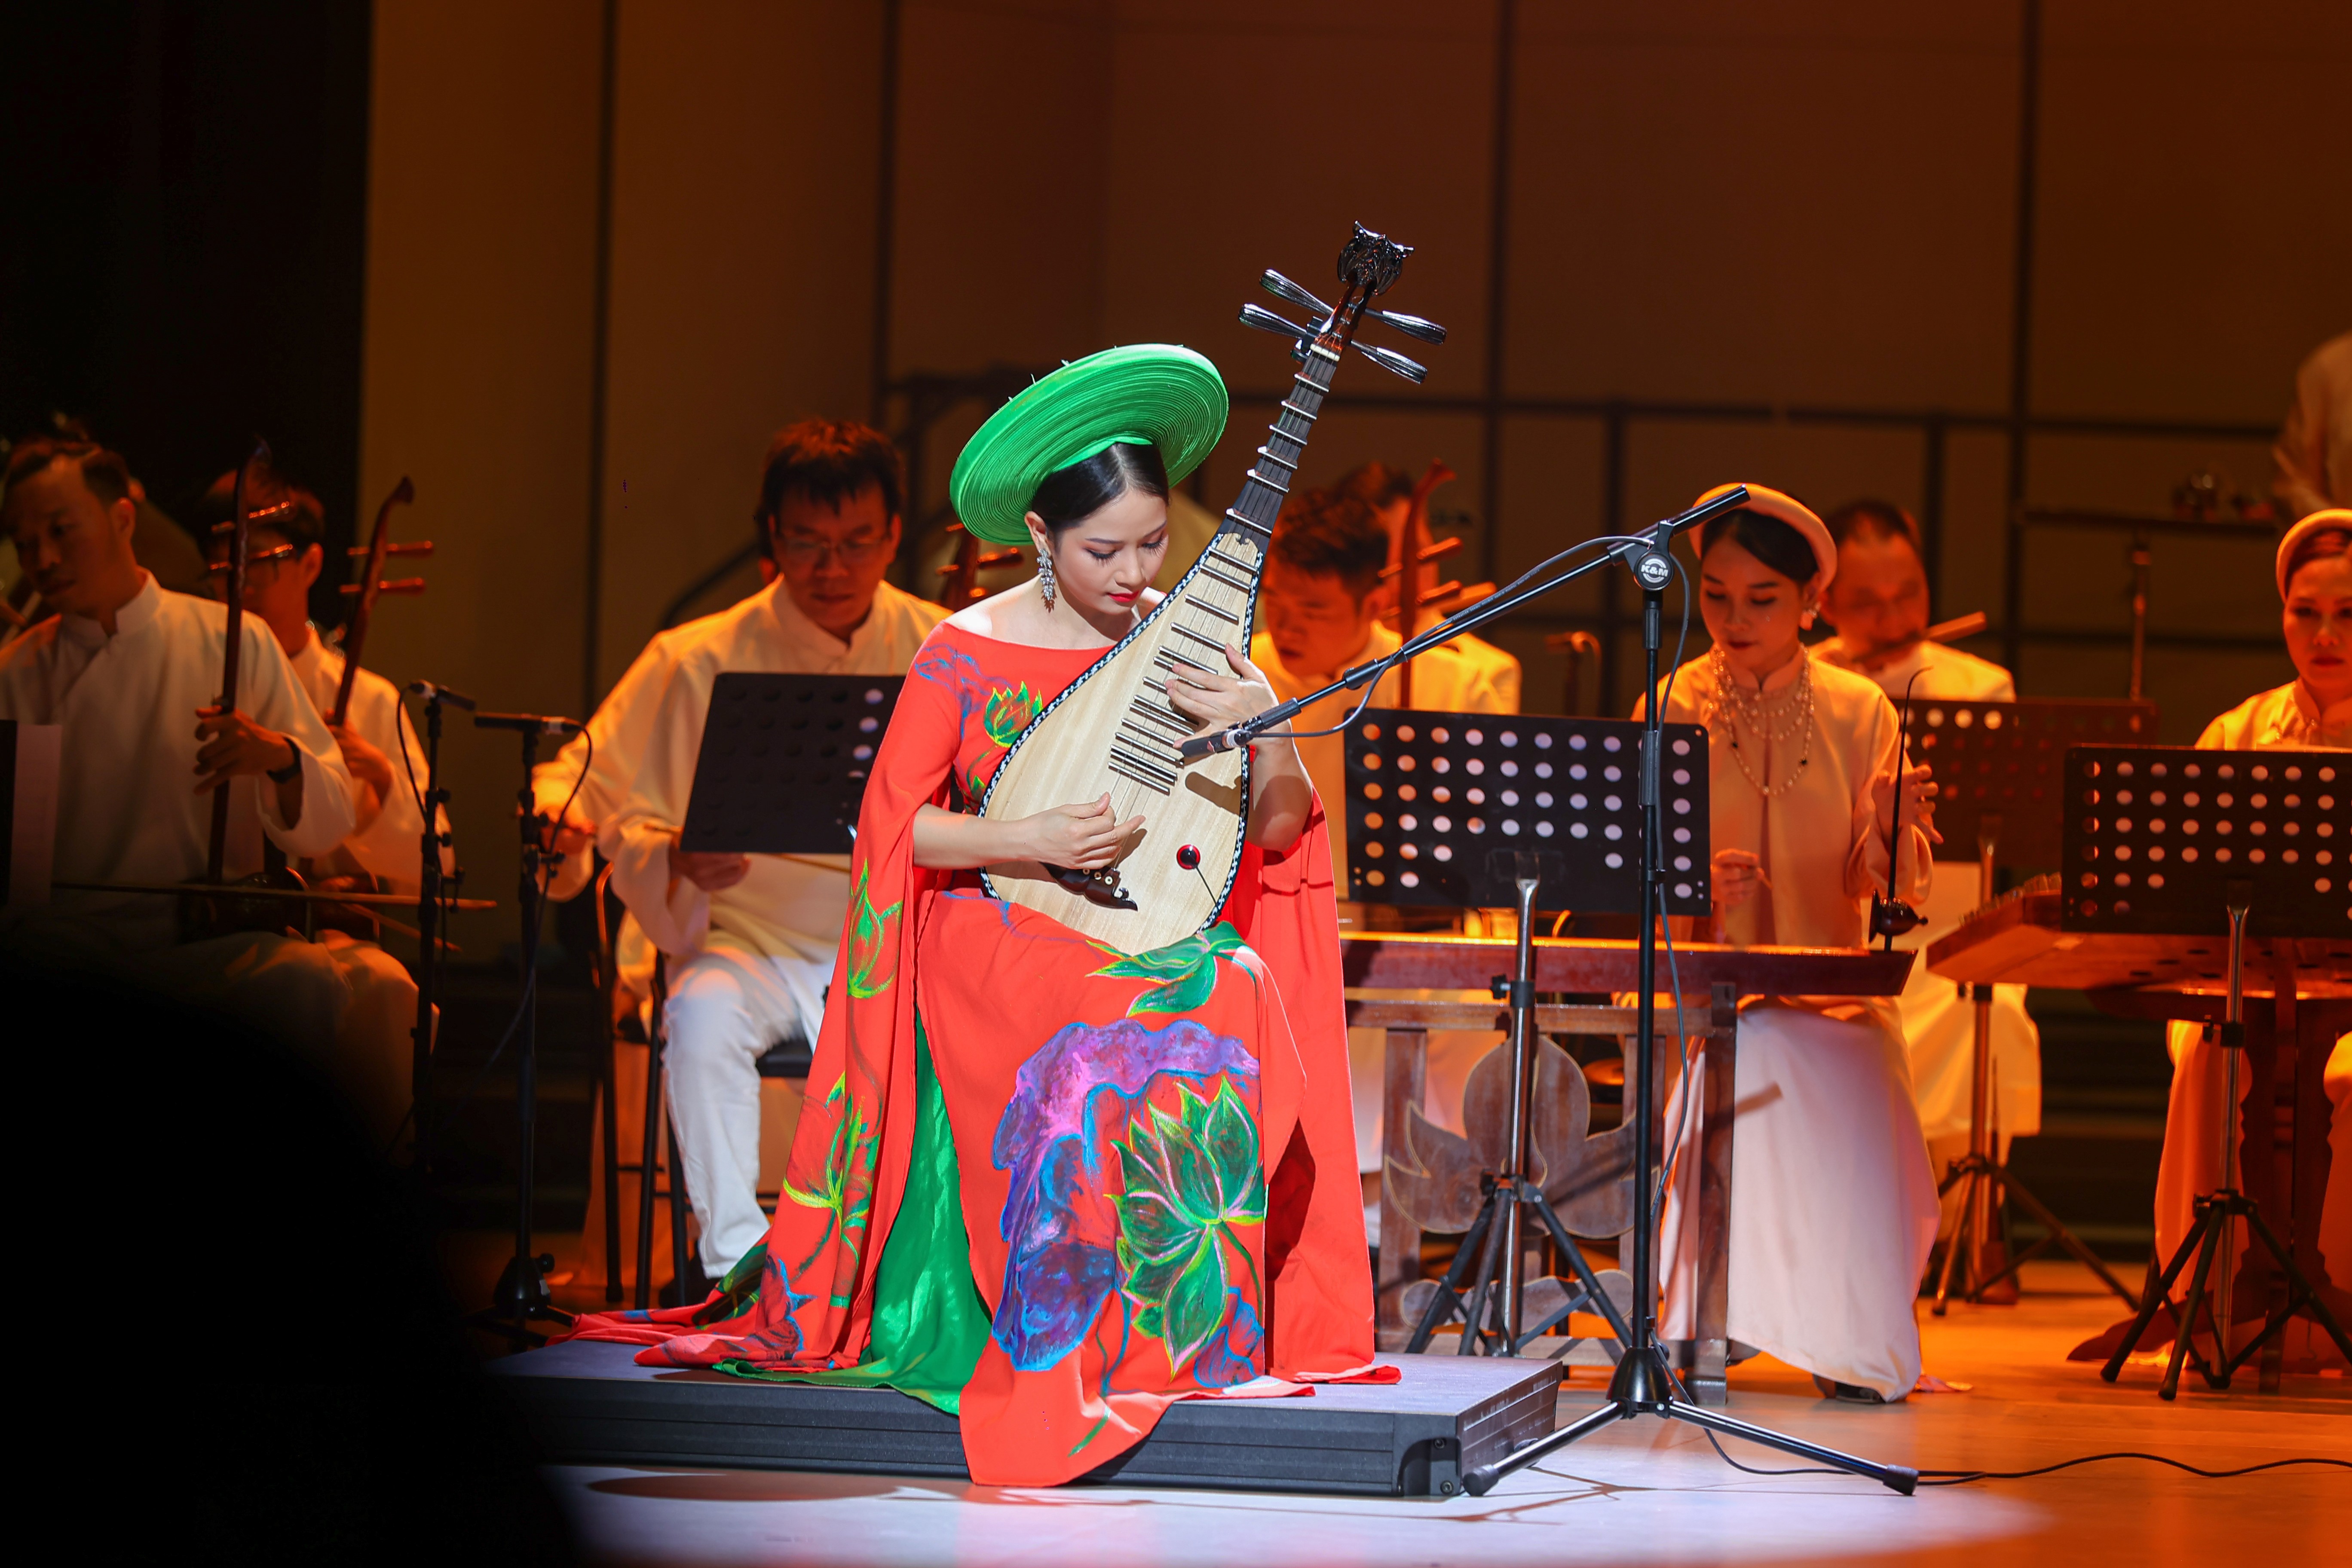 Văn hoá - Nghệ sĩ Diệu Thảo hạnh phúc khi tiếng đàn Tỳ bà lay động được khán giả (Hình 2).